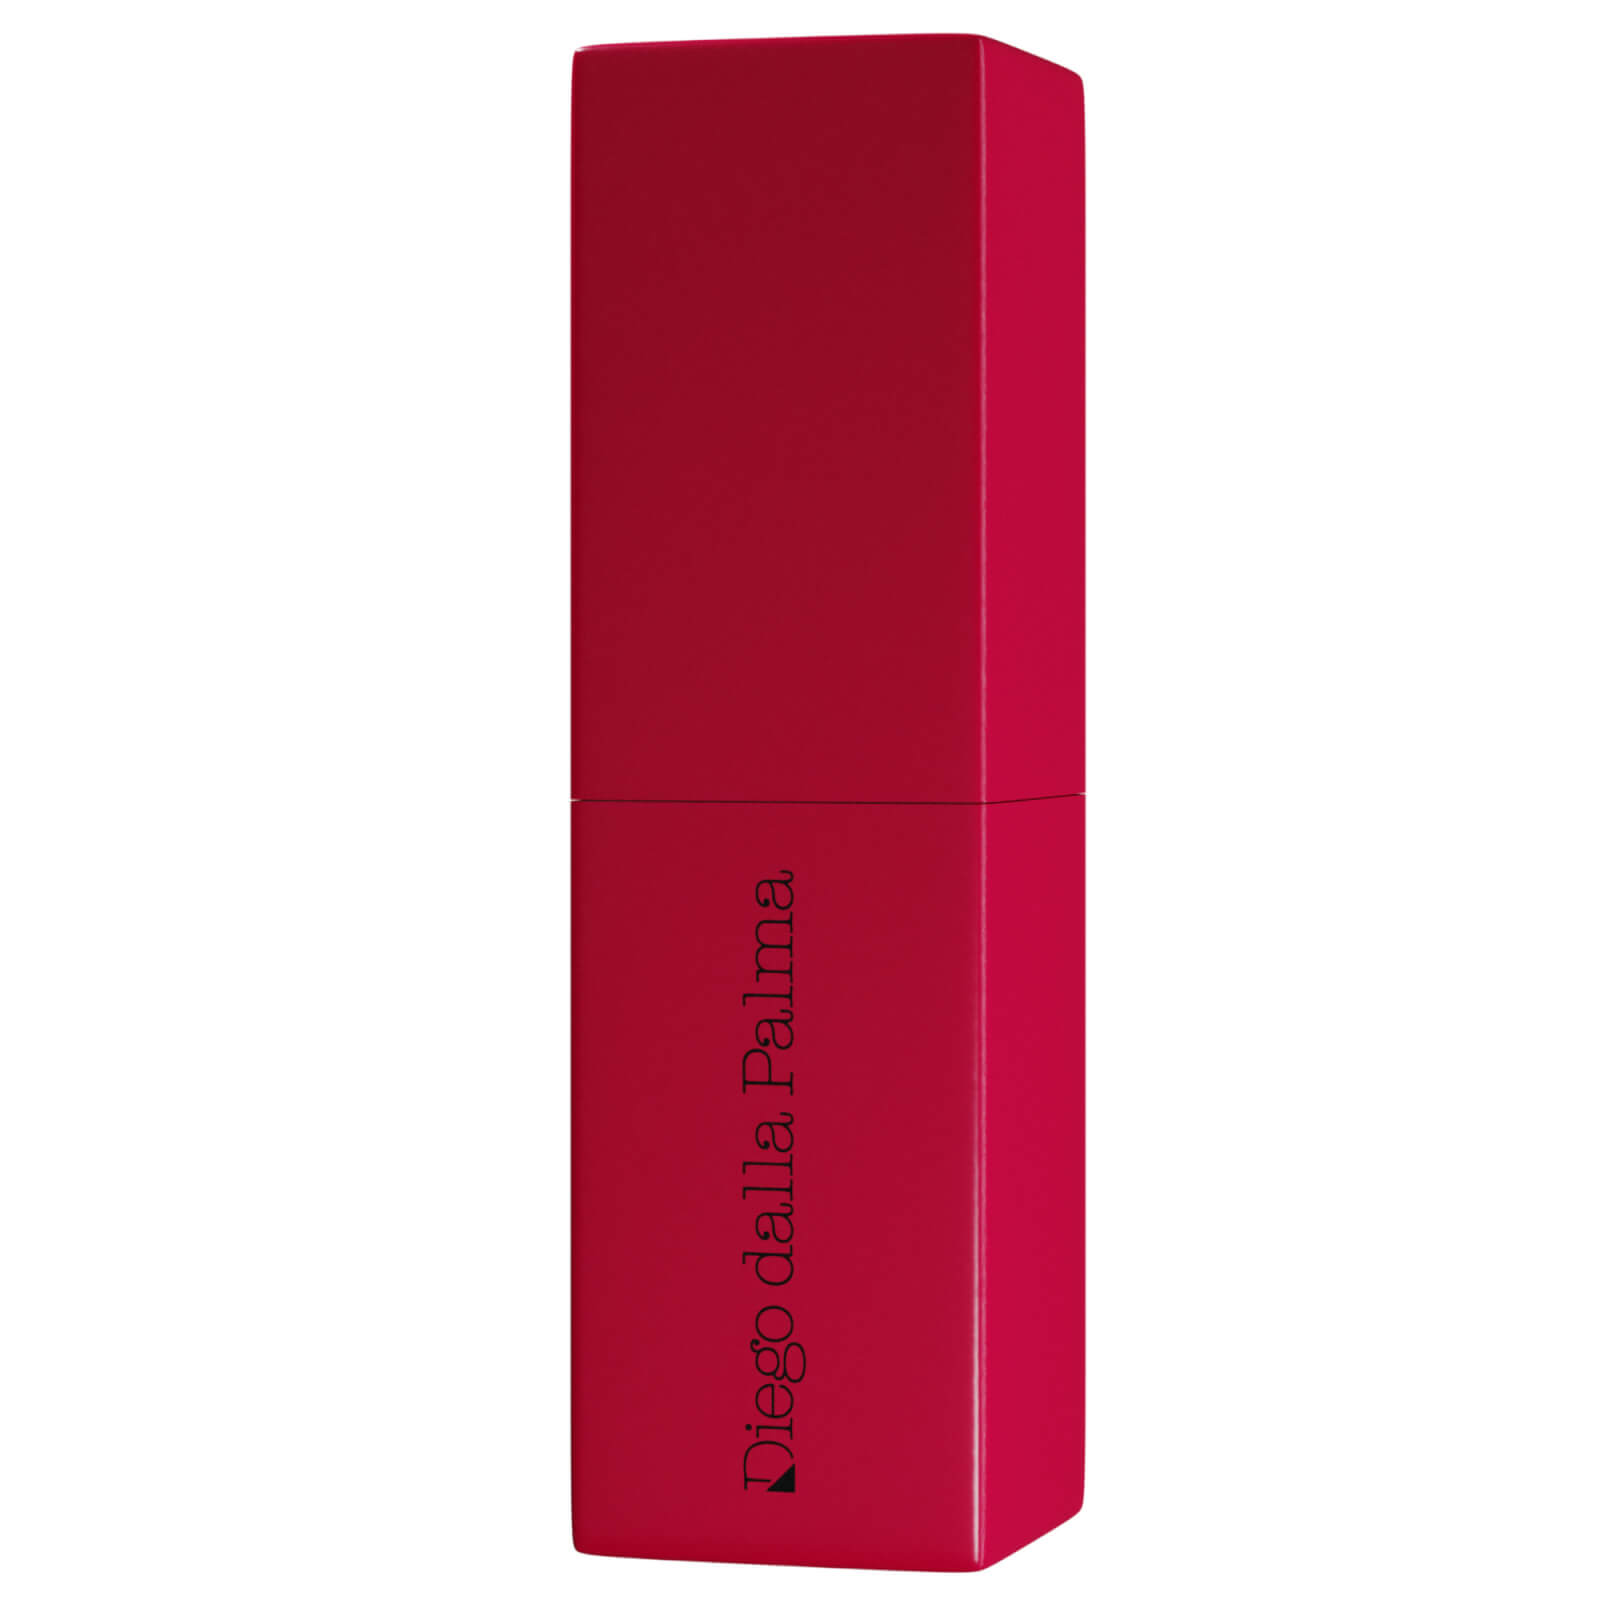 Diego Dalla Palma Refill System Lipstick Case - Red